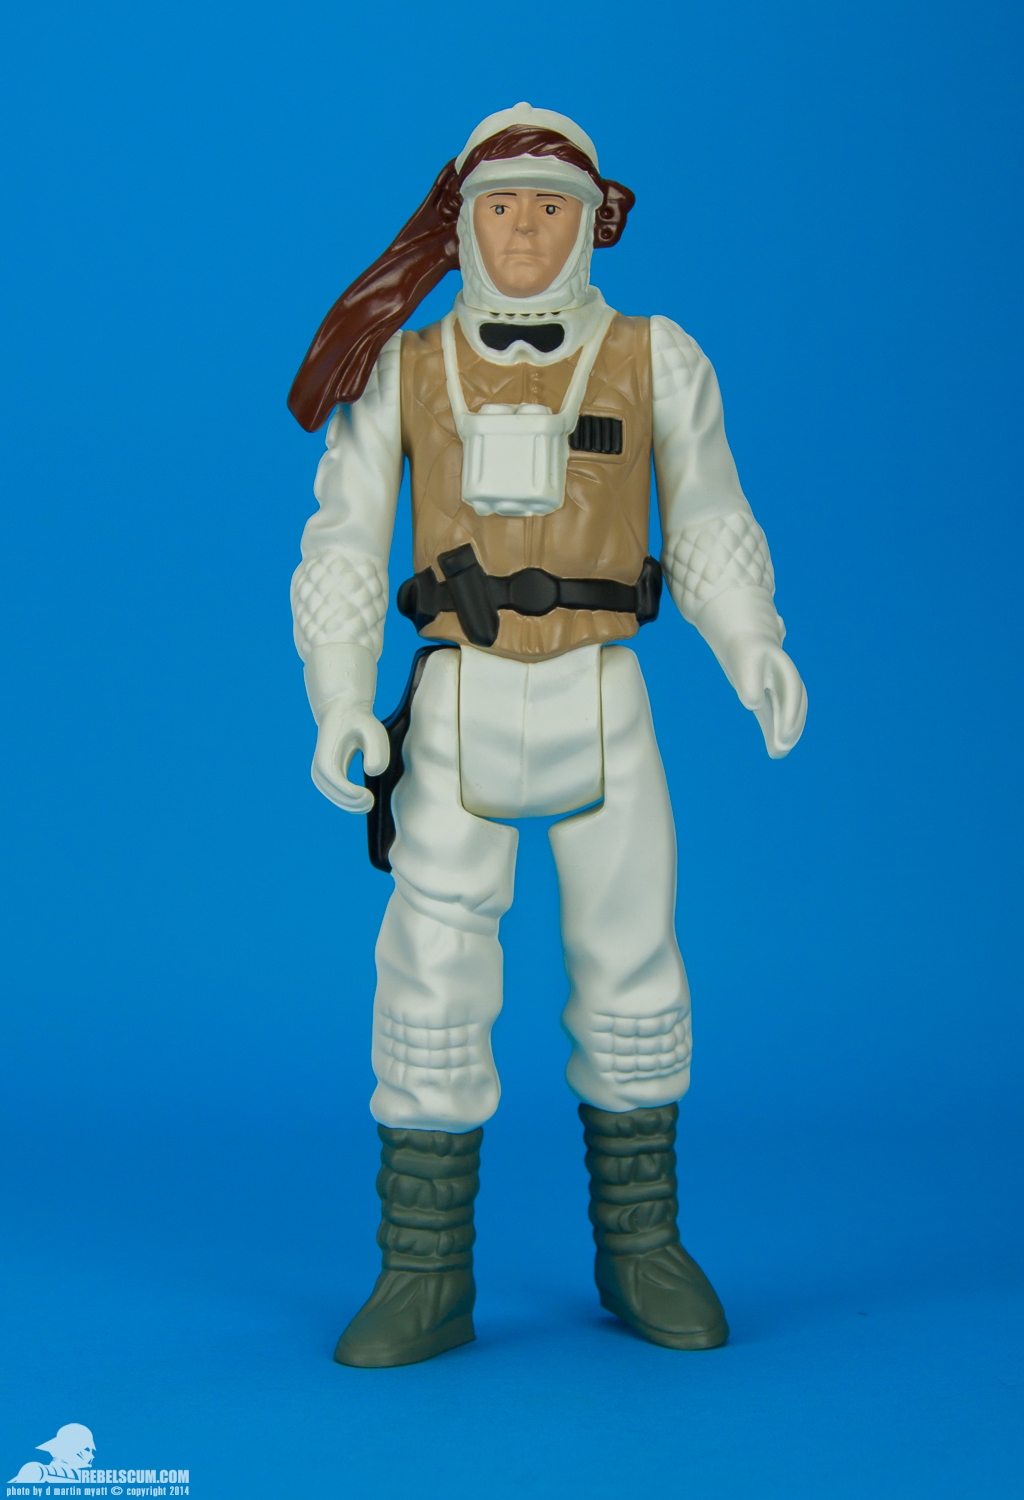 Luke-Skywalker-Hoth-Battle-Gear-Gentle-Giant-Ltd-Jumbo-Kenner-001.jpg